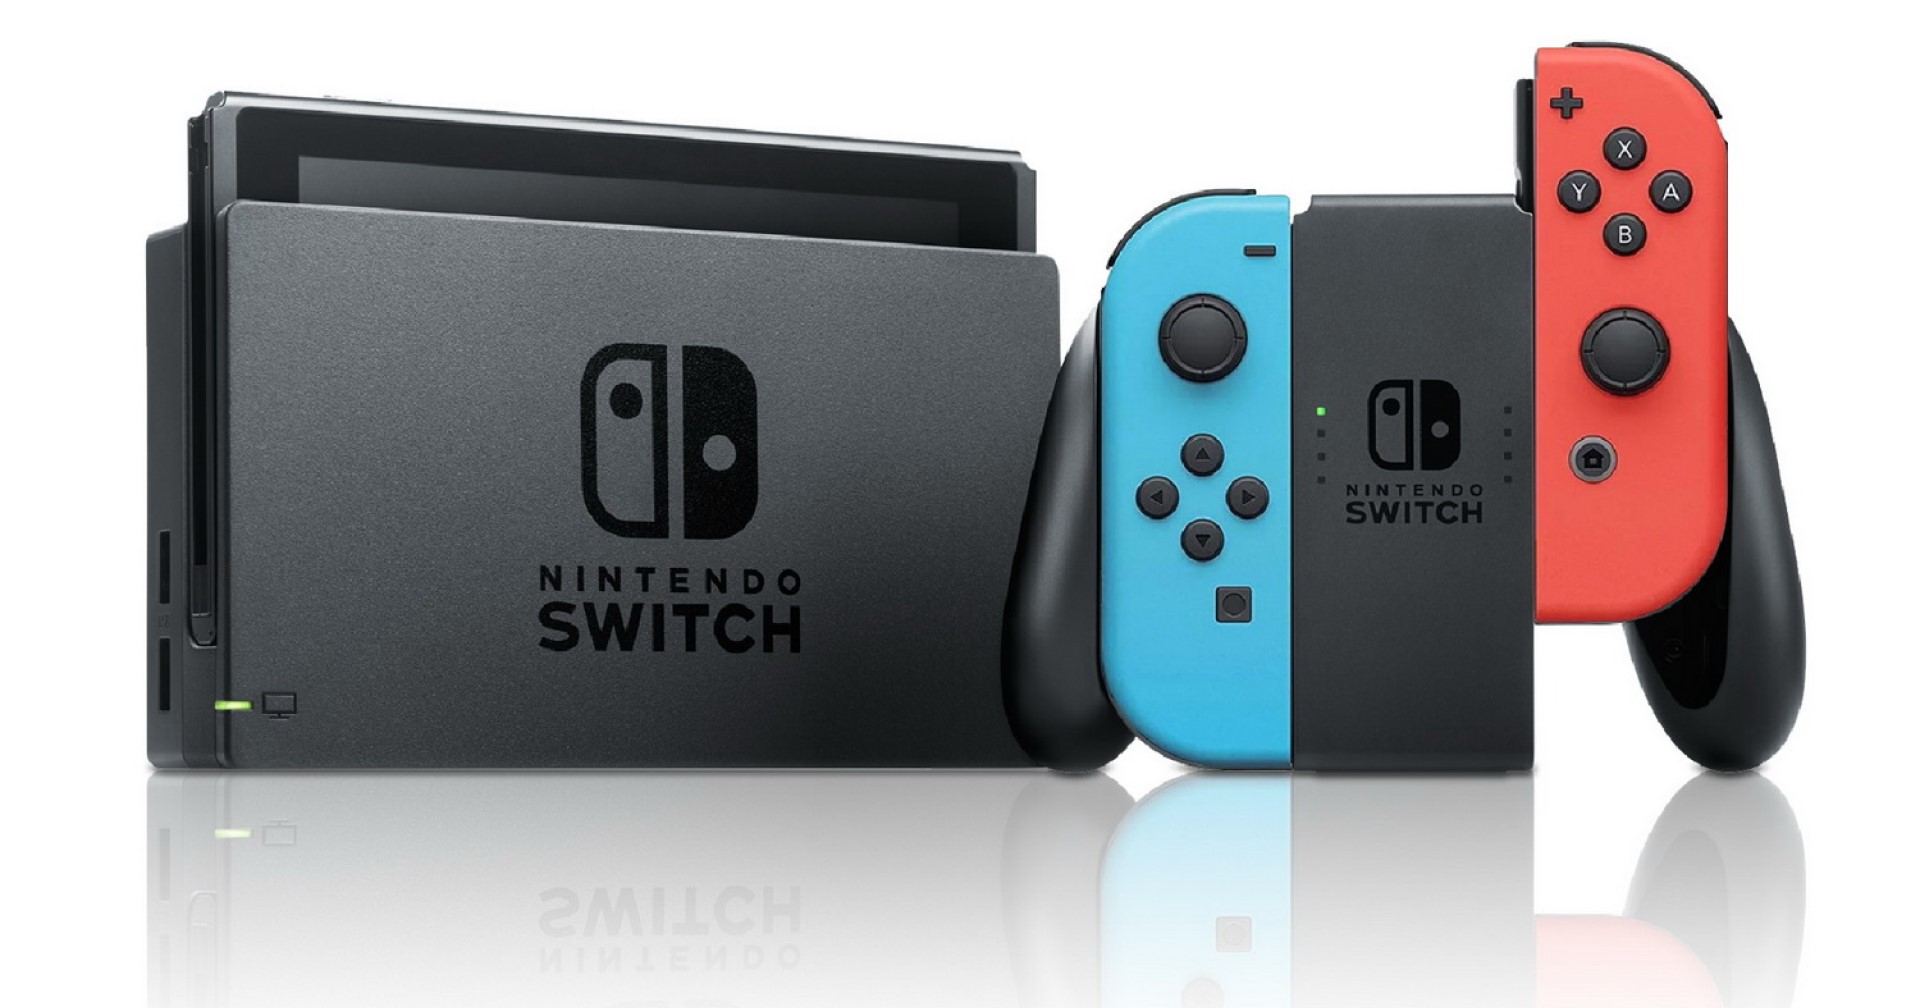 ยอดขาย Switch ปีนี้ลดลงเนื่องจากปัญหาขาดแคลนเซมิคอนดักเทอร์ แต่ Nintendo เชื่อสถานการณ์จะค่อย ๆ ดีขึ้น